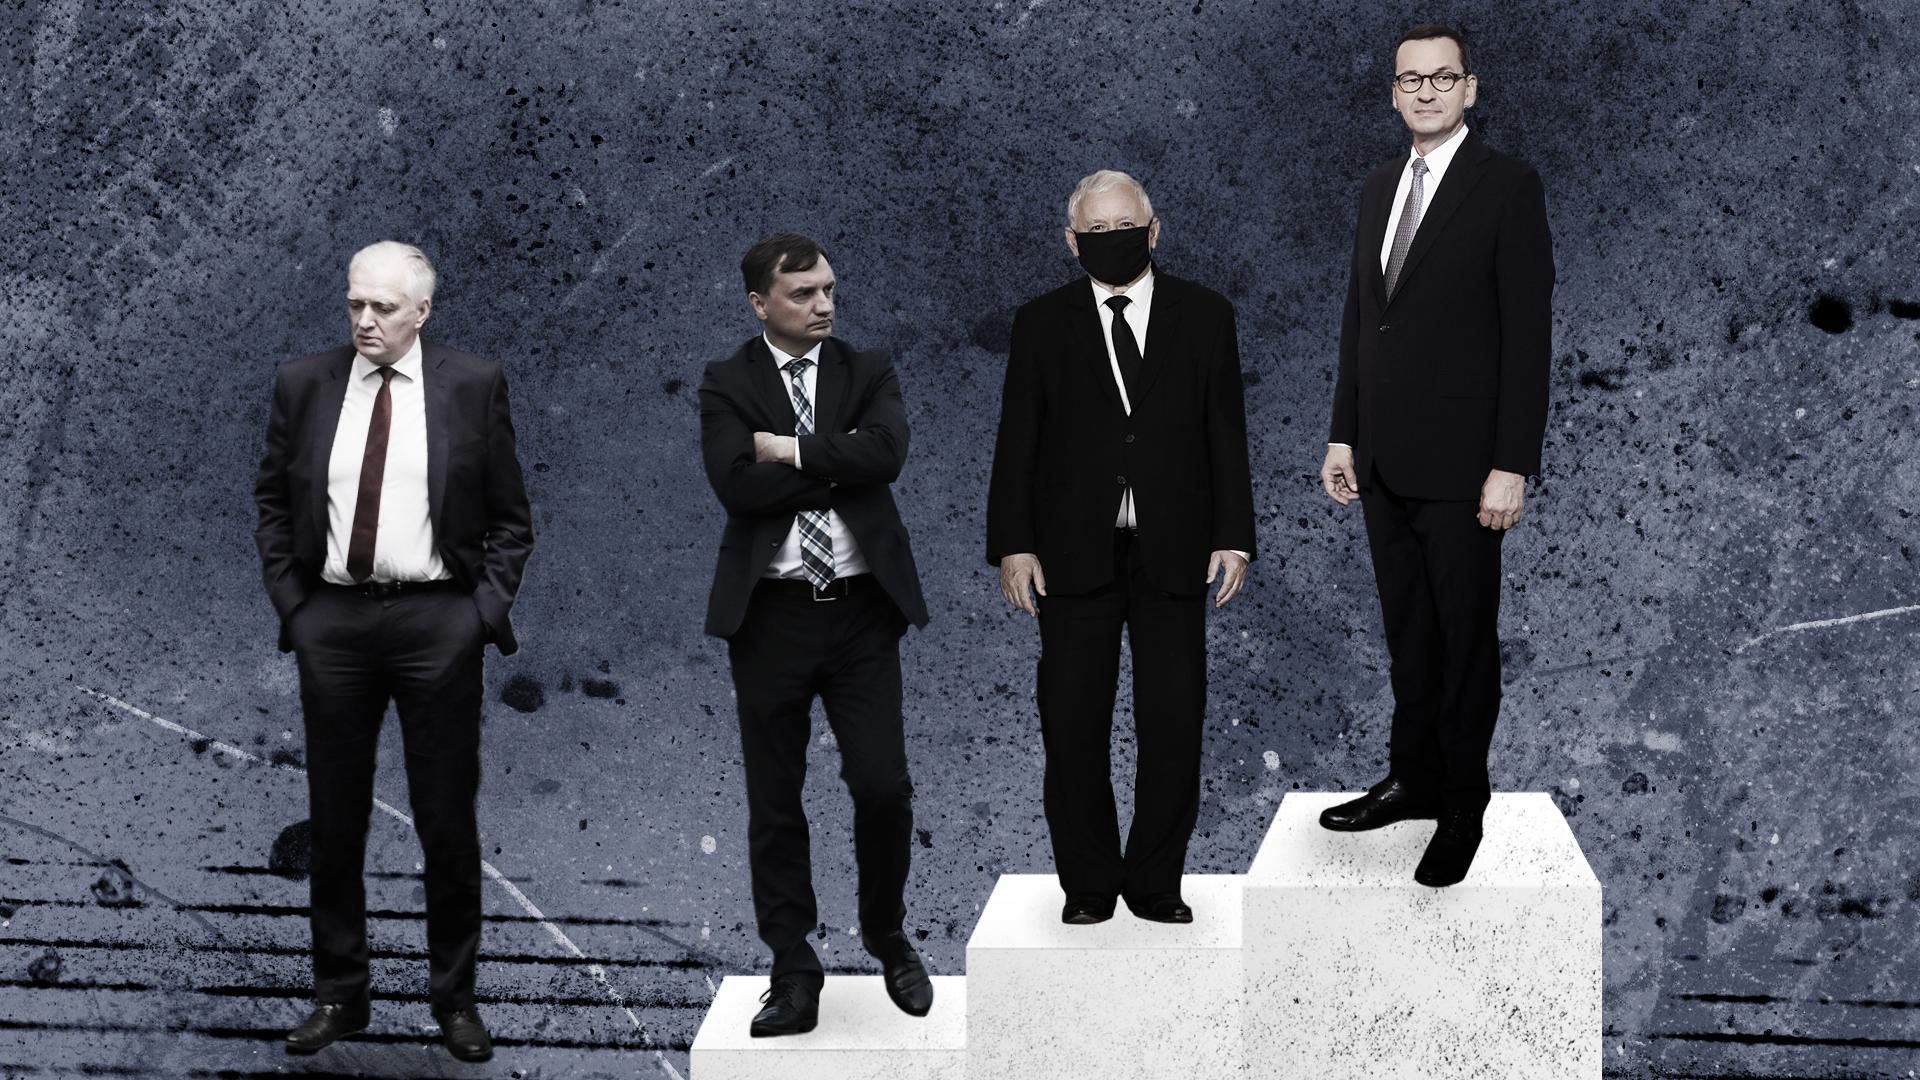 Liderzy Zjednoczonej Prawicy stoją na podium, poza nim znajduje się Jarosław Gowin. To wynik sondażu wśród wyborców PiS